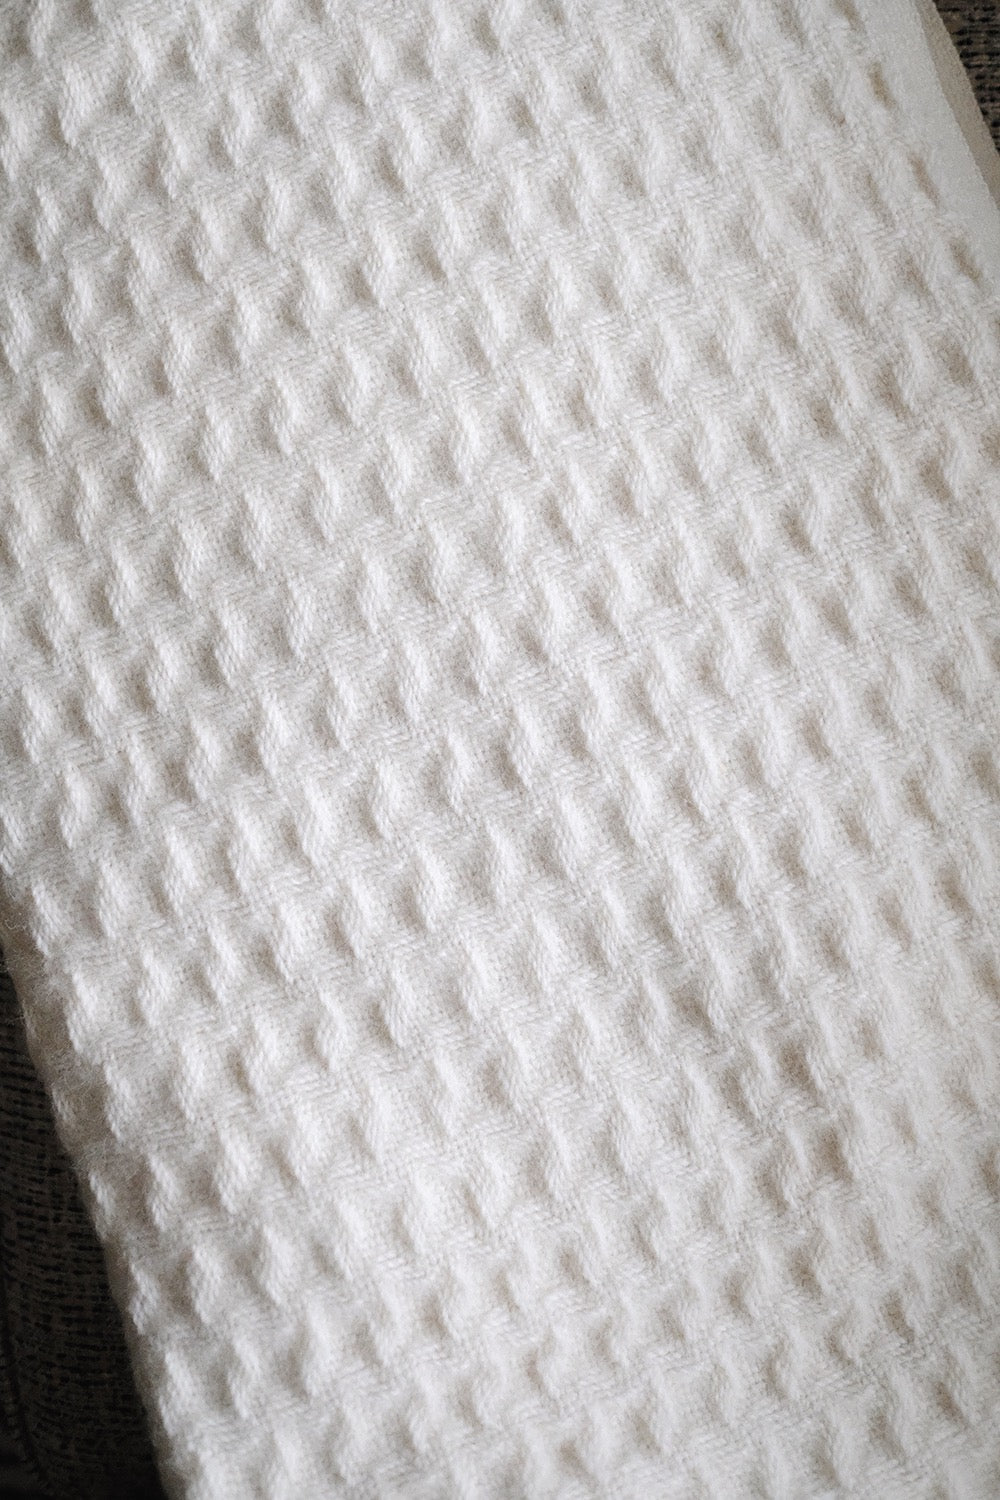 wool pendleton throw blanket